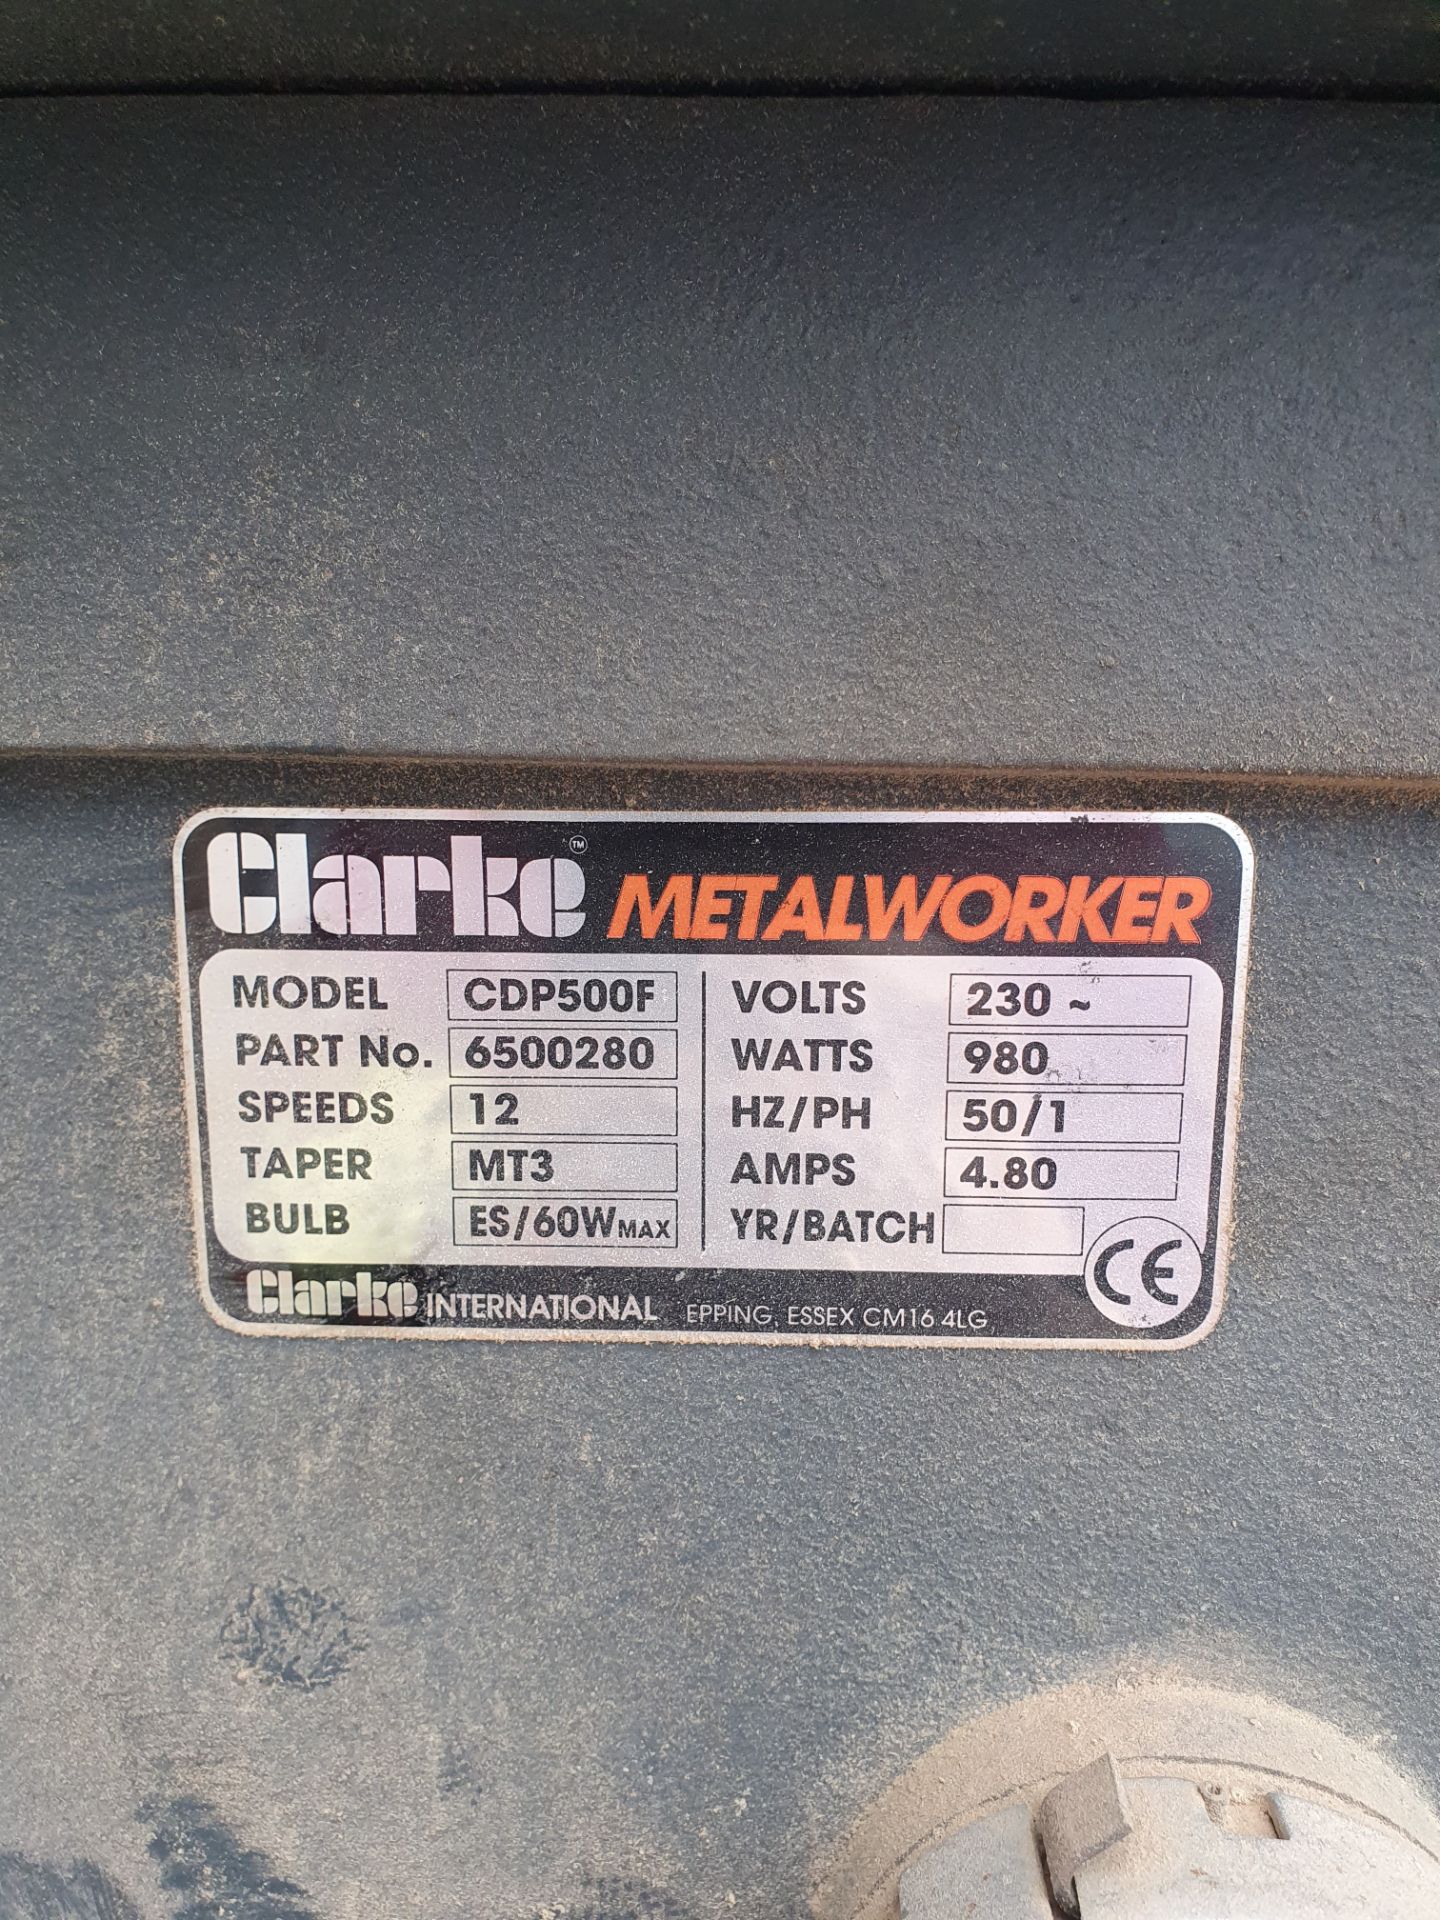 Clarke Metalworker Floor Standing Drill Press | 12 Speed | CDP500F - Image 4 of 11